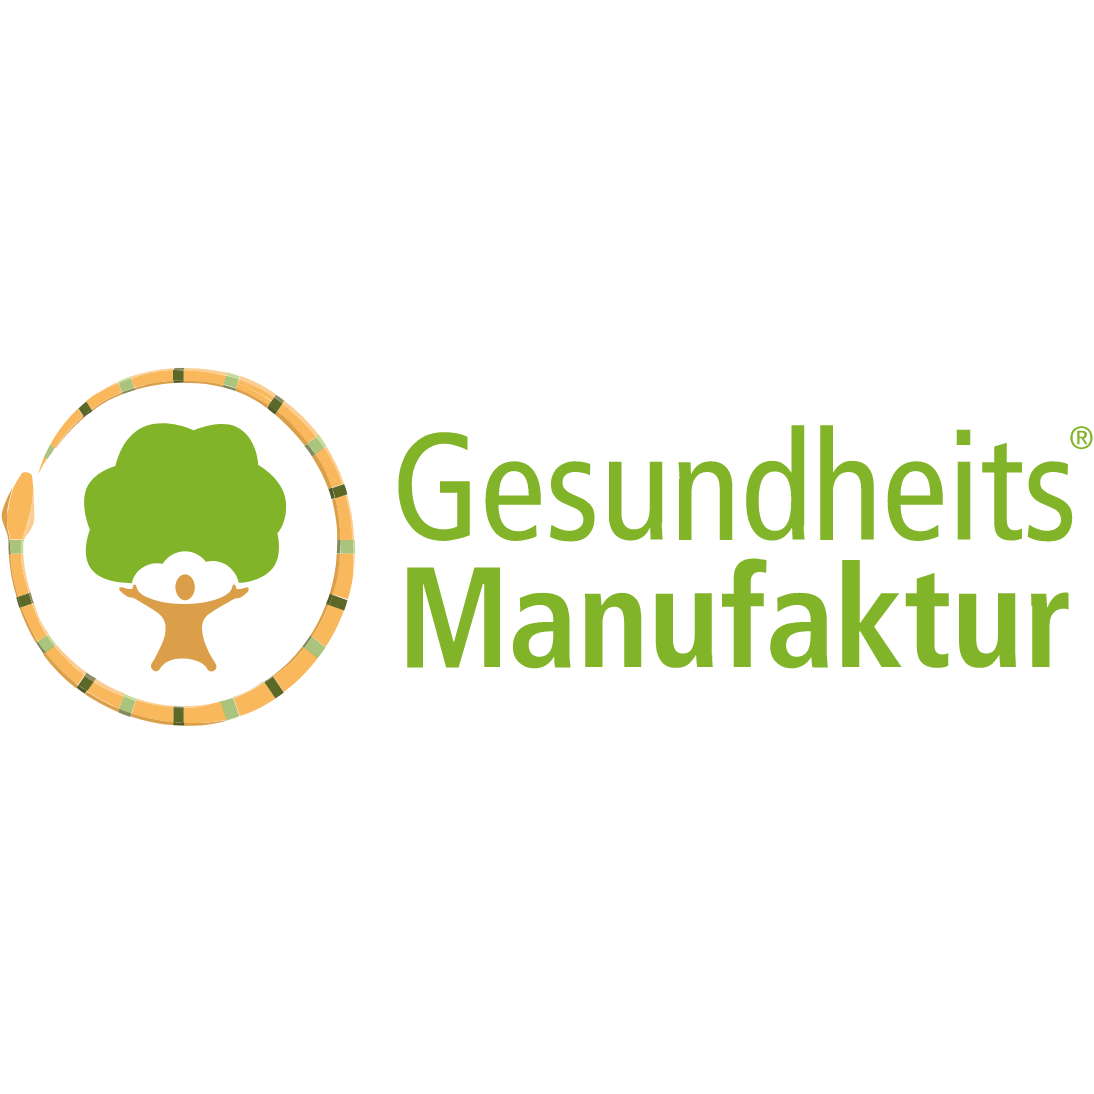 Gesundheitsmanufaktur_logo